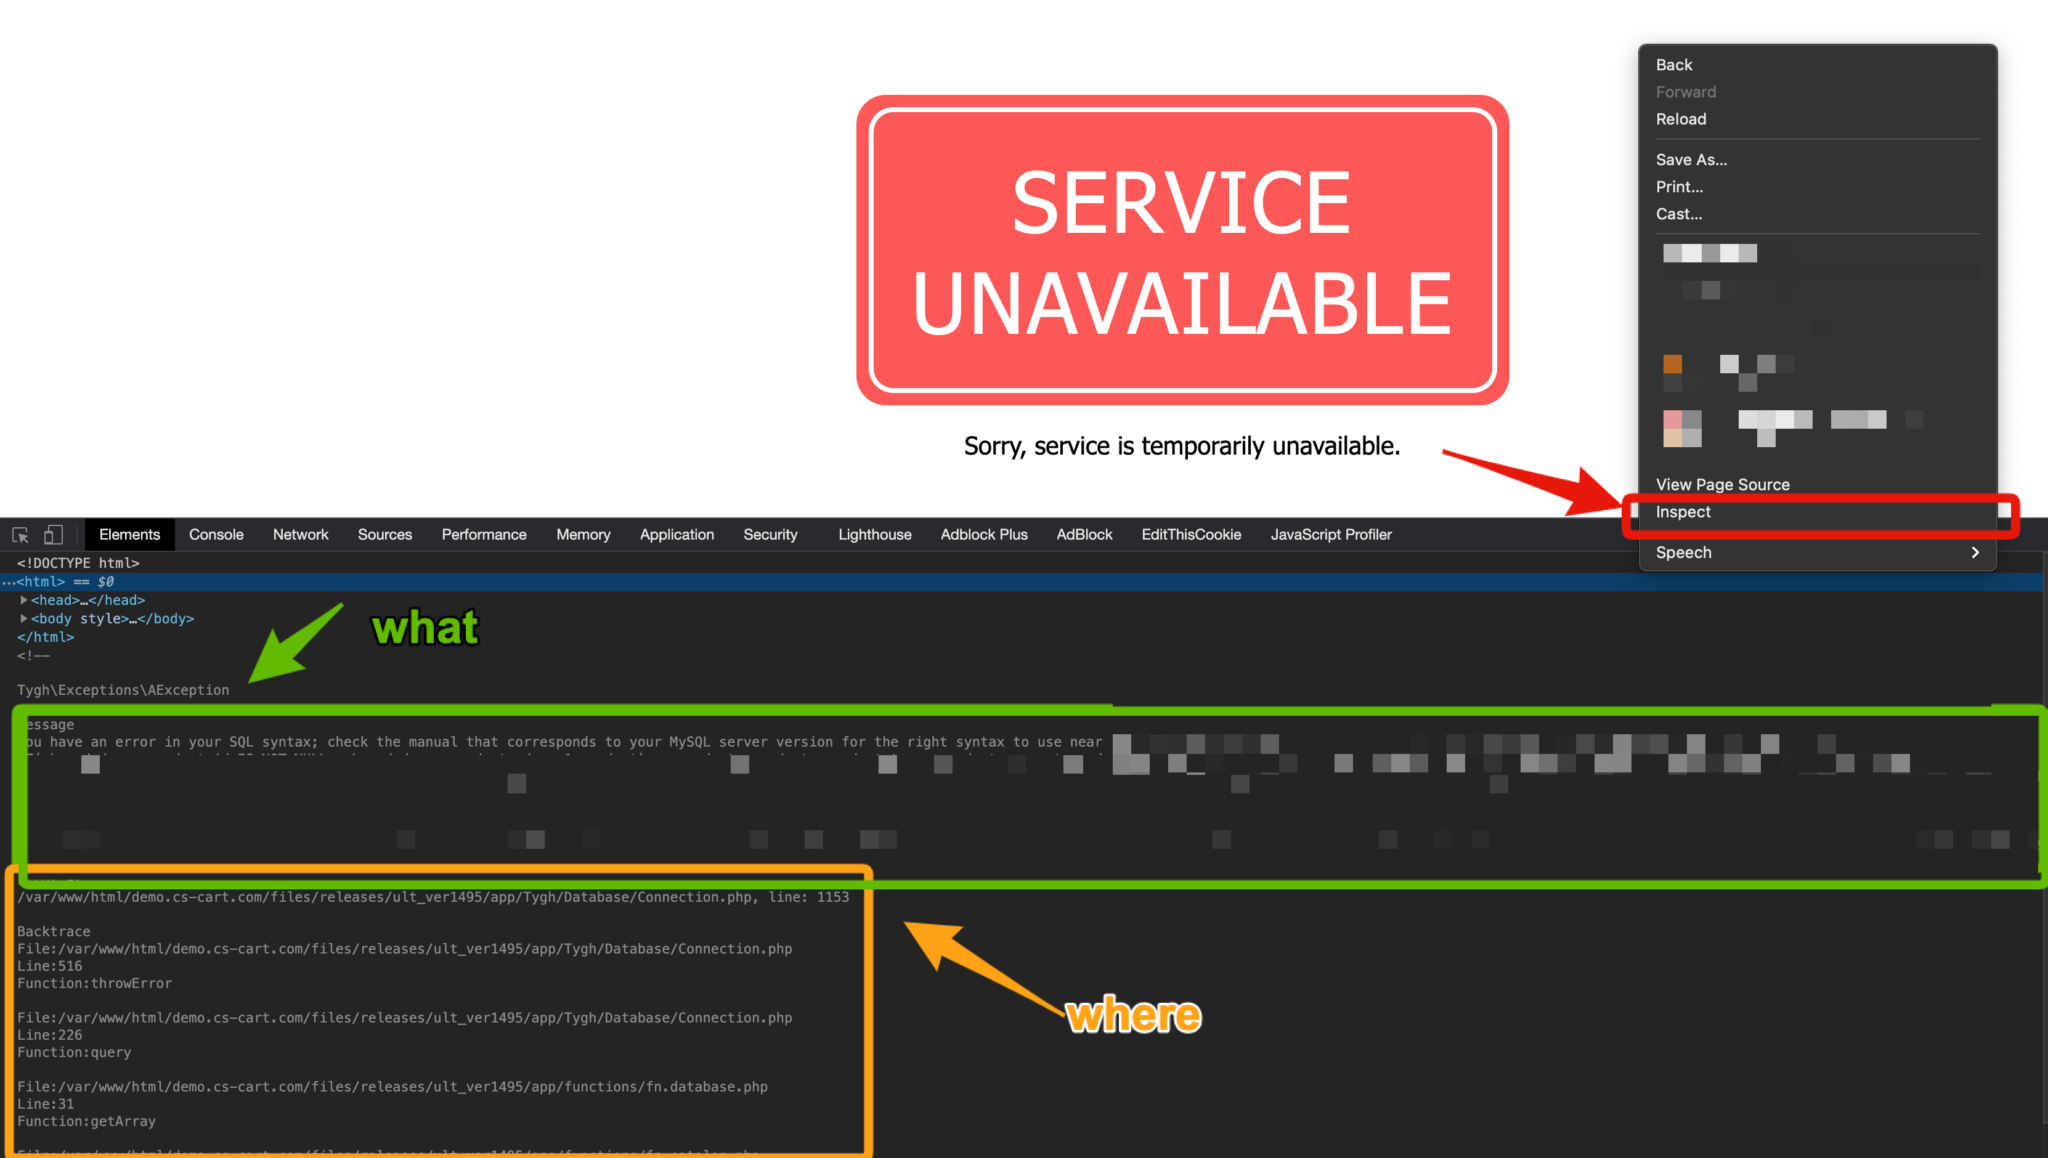 CS Cart service unavailable. Cloudflare 503 service unavailable. Unavailable.e. Postimg грузит фото ошибка 503 service unavailable. App unavailable